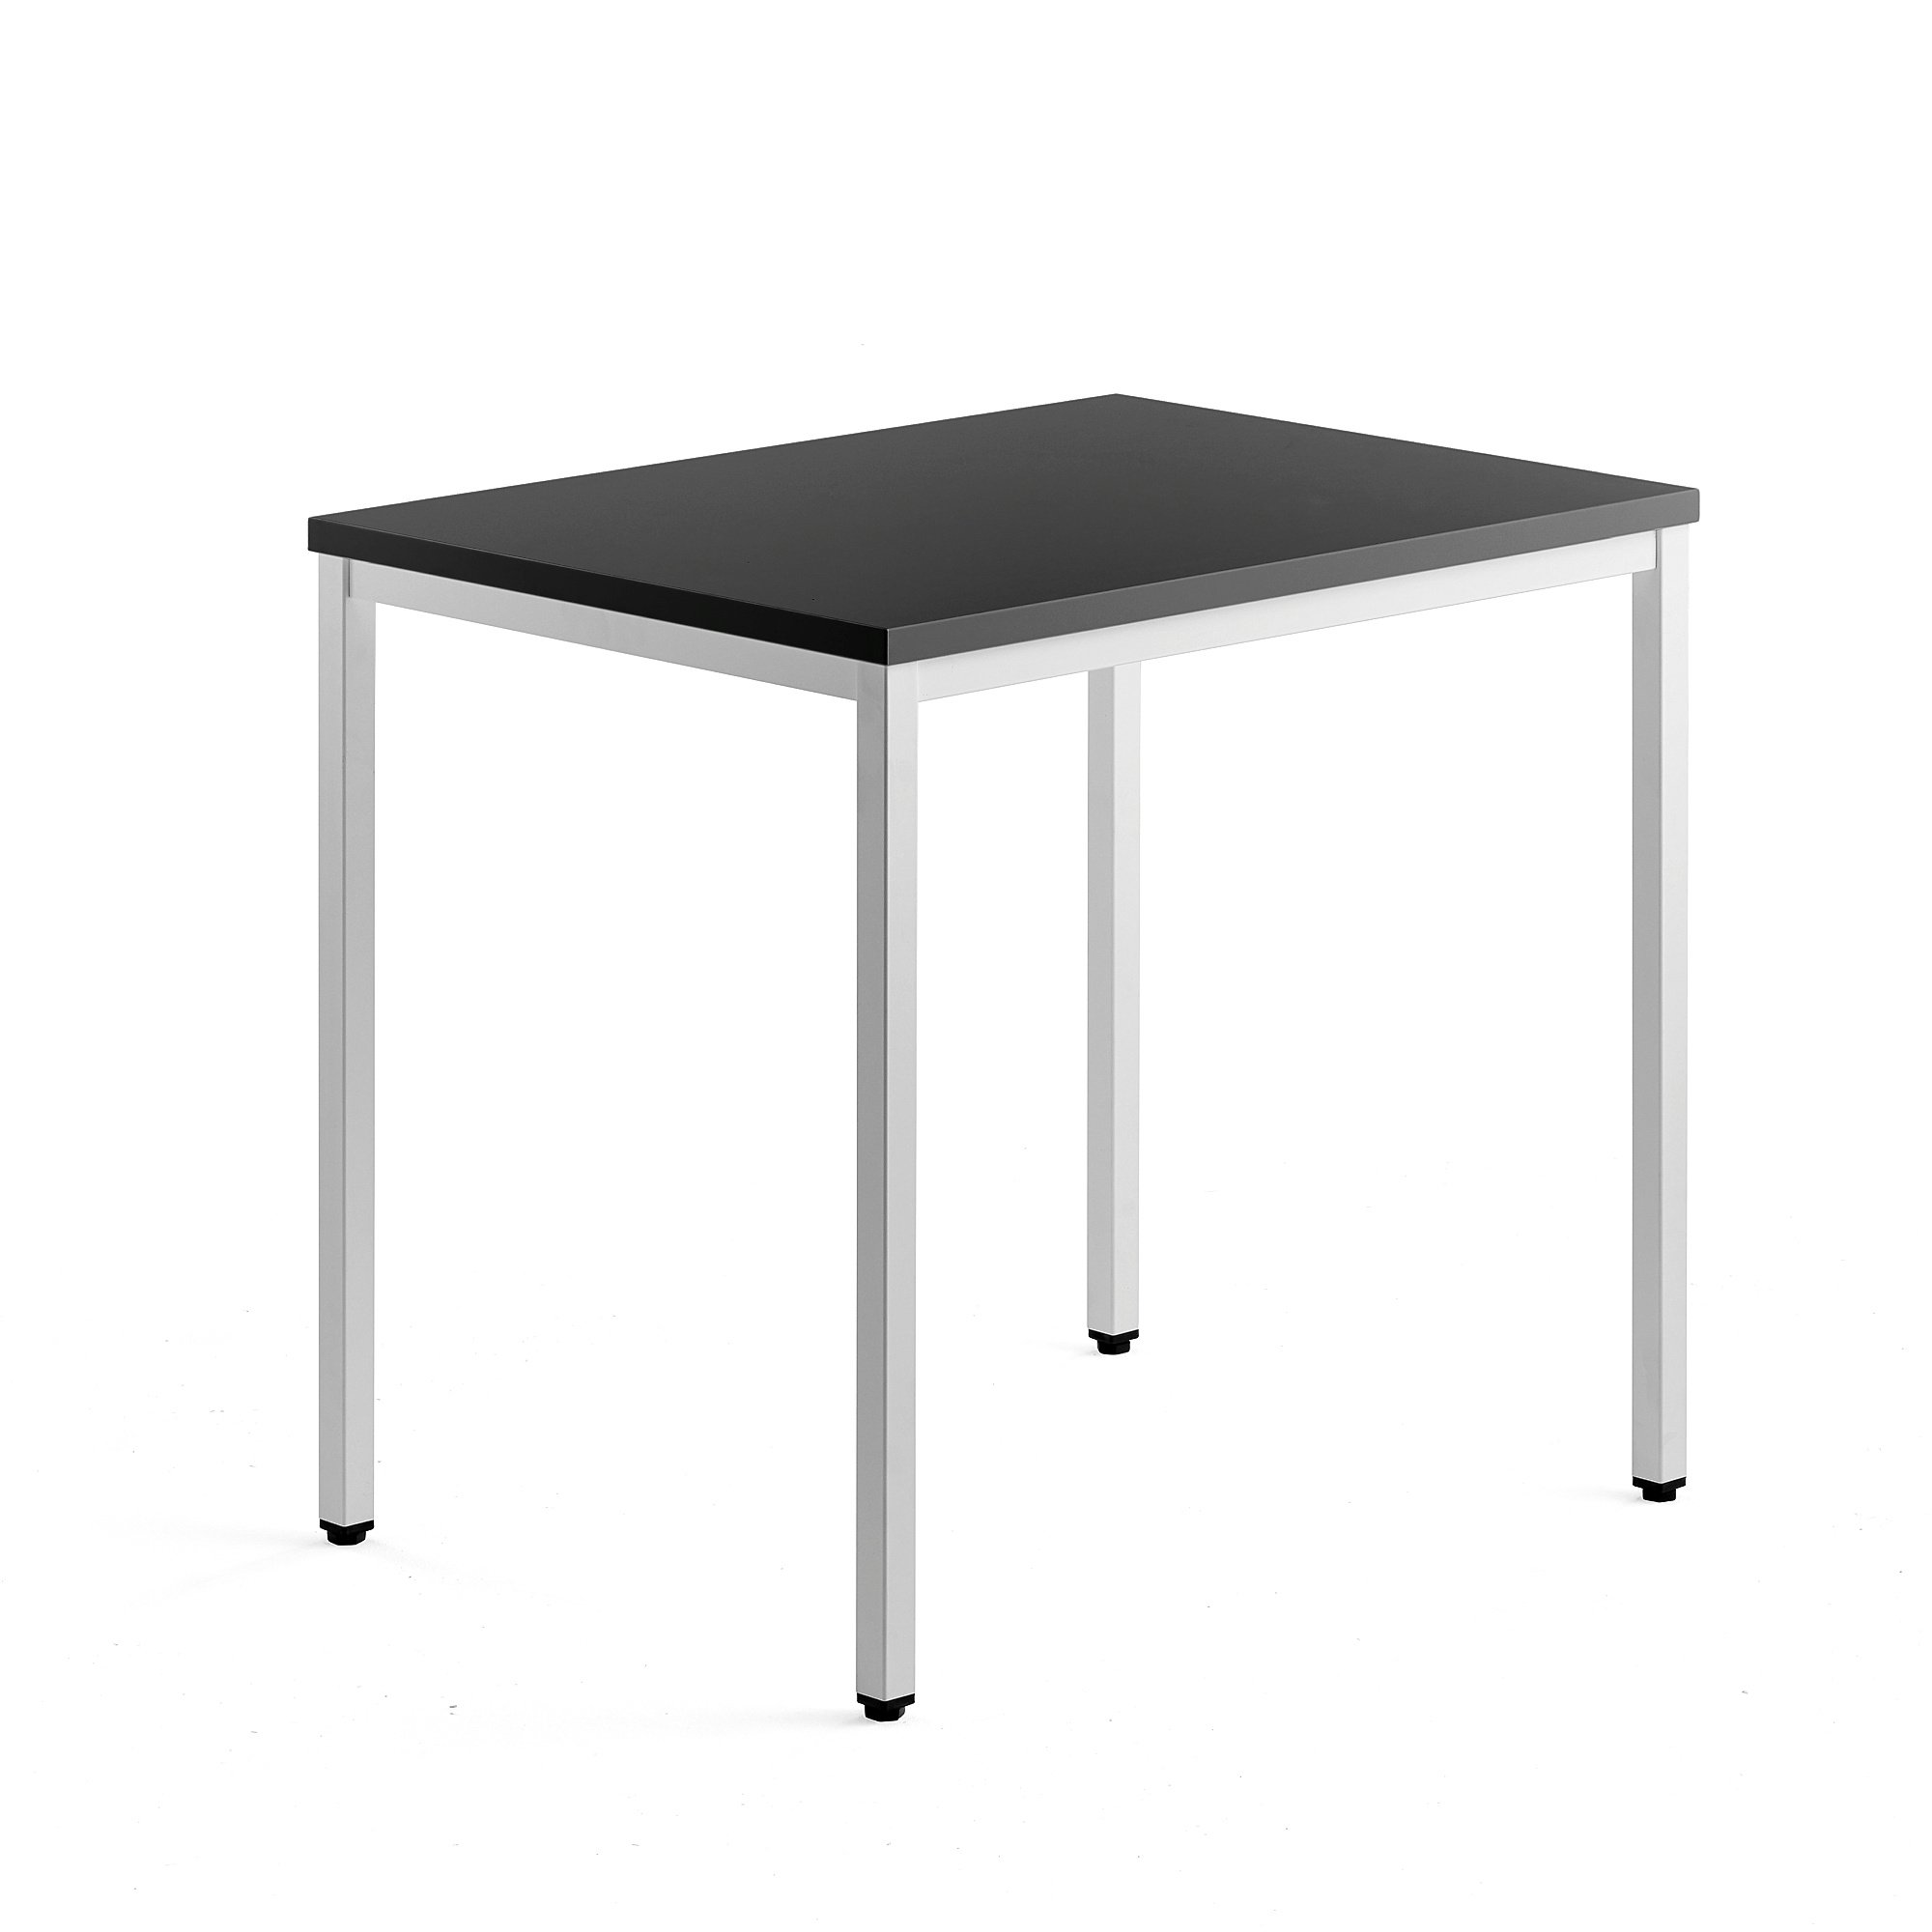 Přídavný stůl QBUS, 4 nohy, 800x600 mm, bílý rám, černá